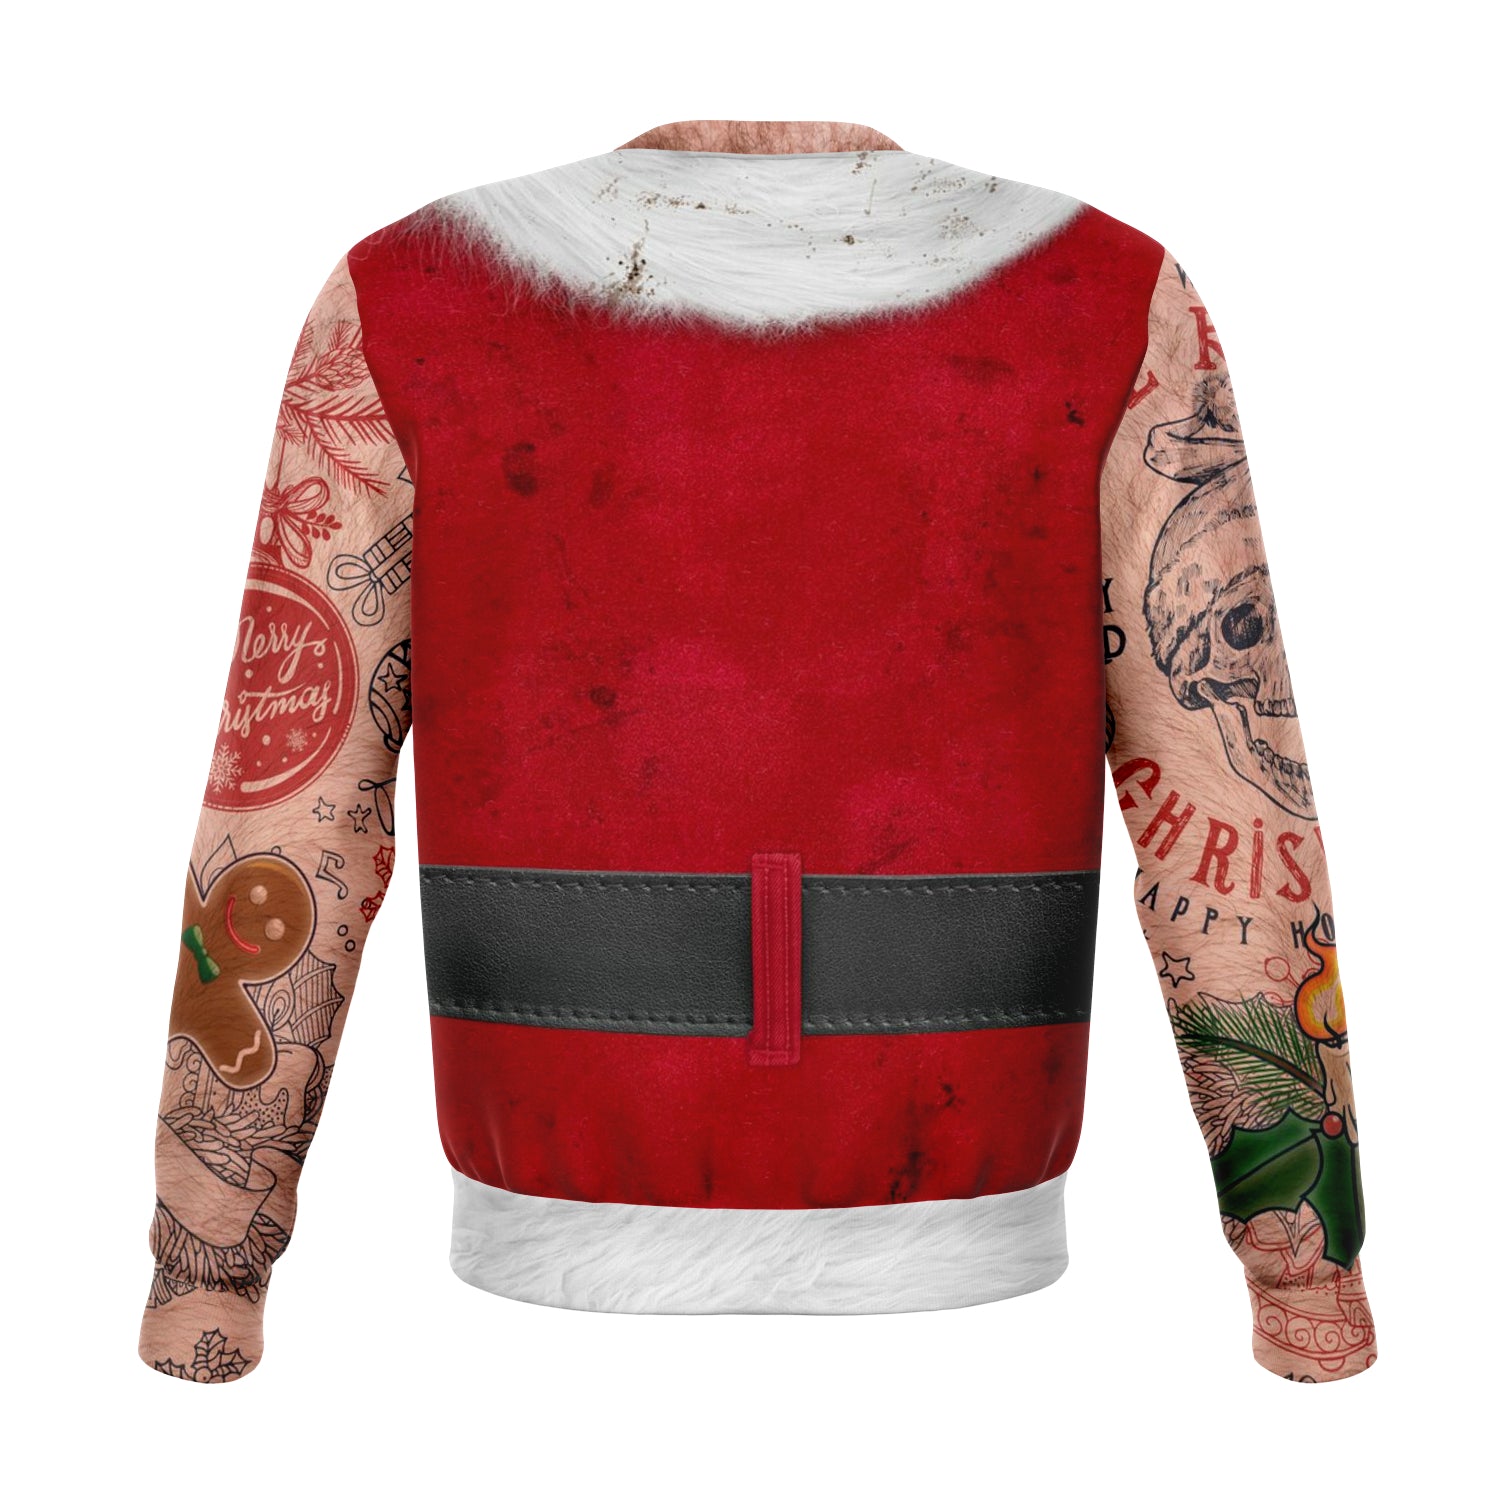 Sleeveless Bad Santa Sweatshirt | Unisex Ugly Christmas Sweater, Xmas Sweater, Holiday Sweater, Festive Sweater, Funny Sweater, Funny Party Shirt